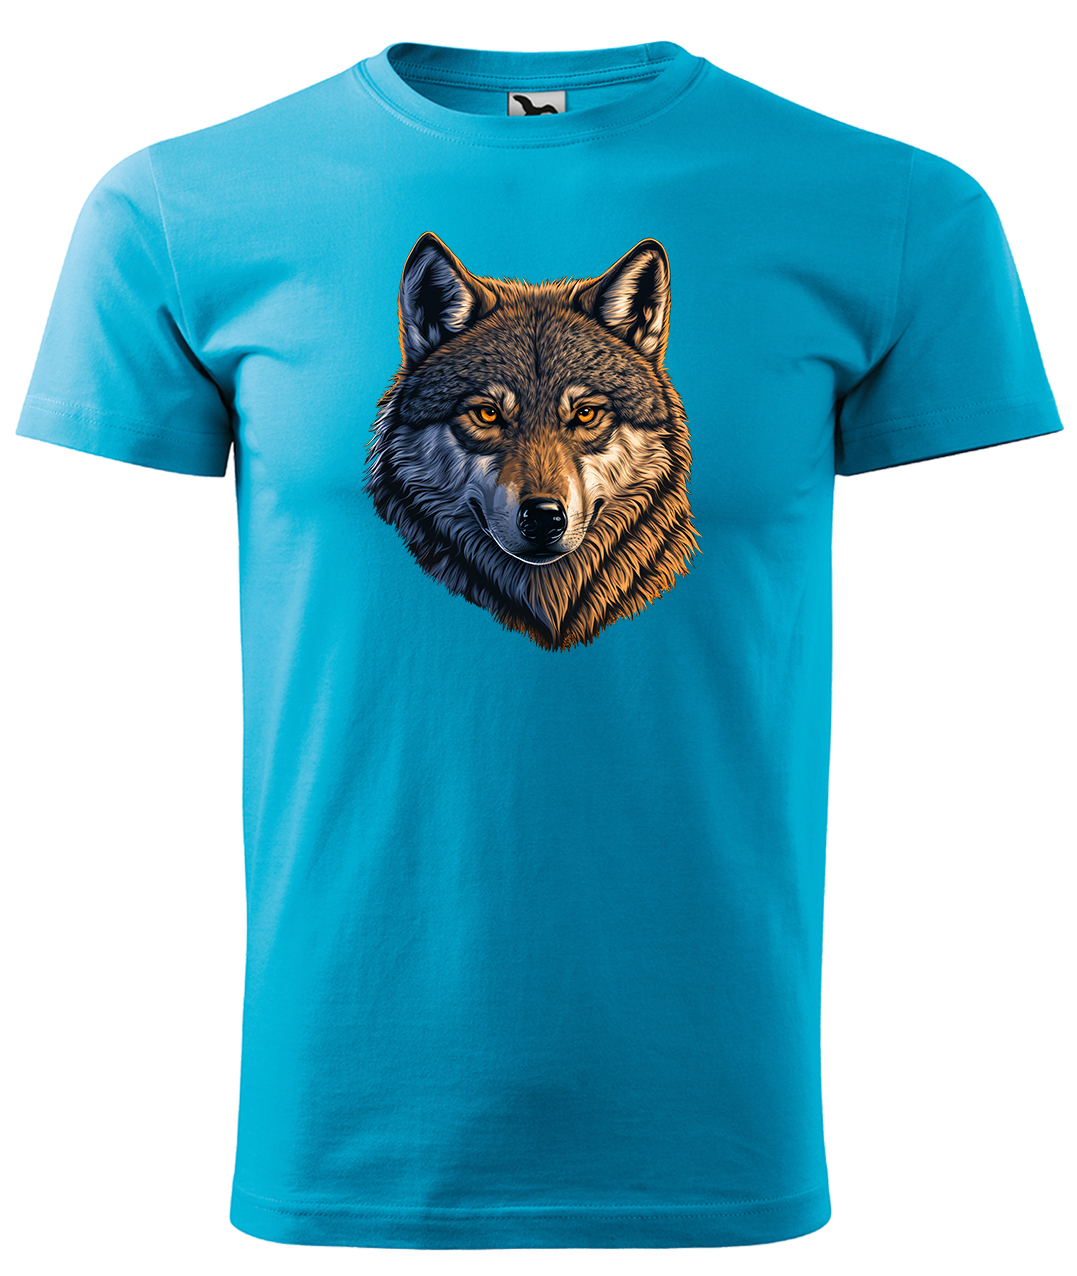 Dětské tričko s vlkem - Hlava vlka Velikost: 6 let / 122 cm, Barva: Tyrkysová (44), Délka rukávu: Krátký rukáv